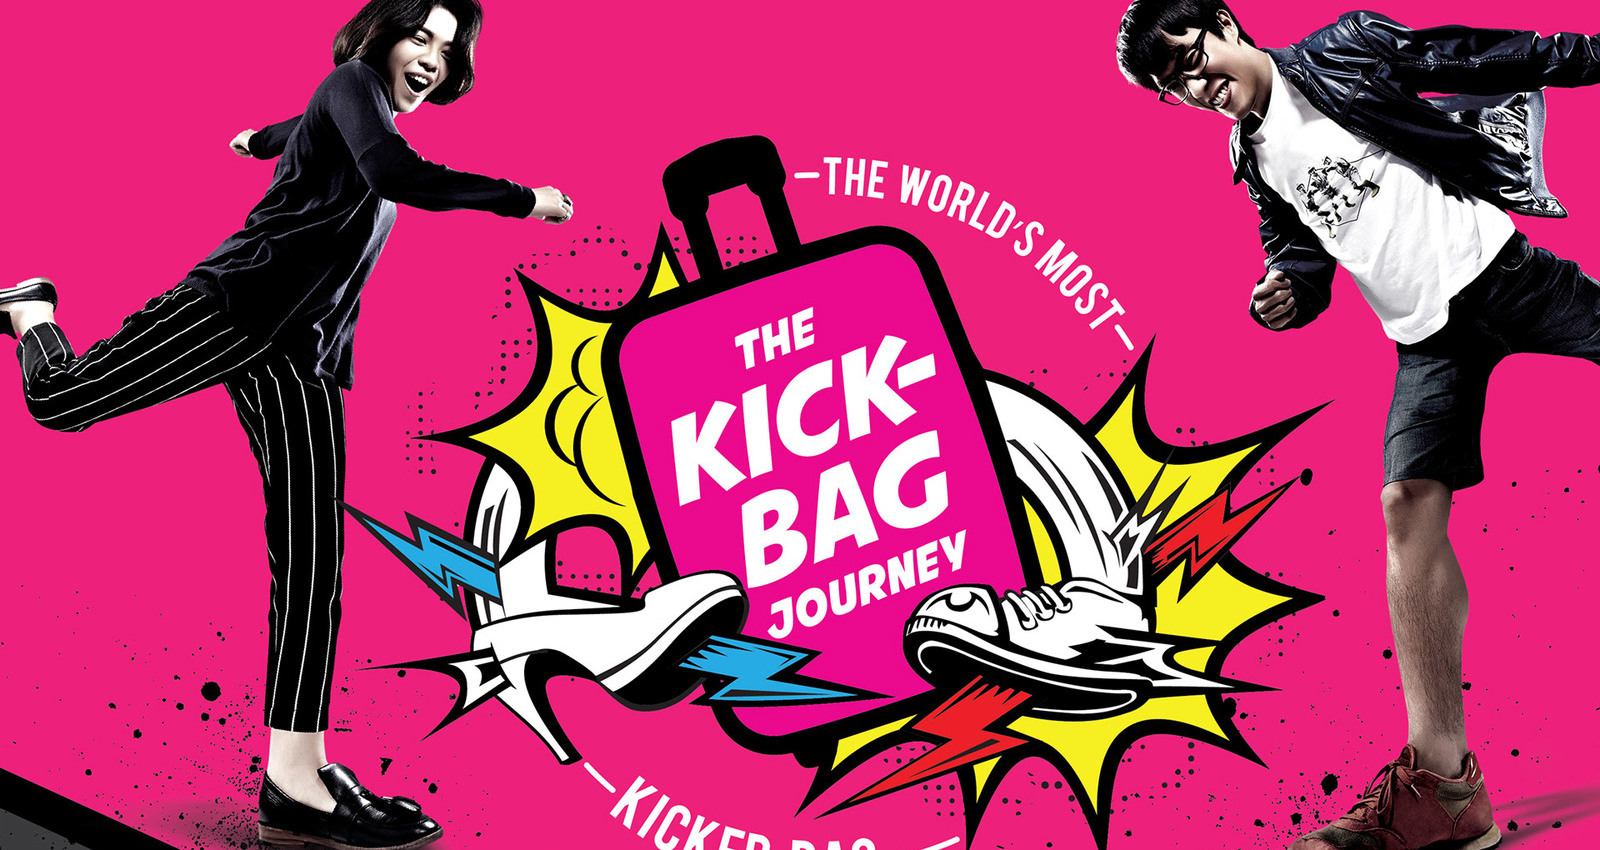 The Kick-Bag Journey